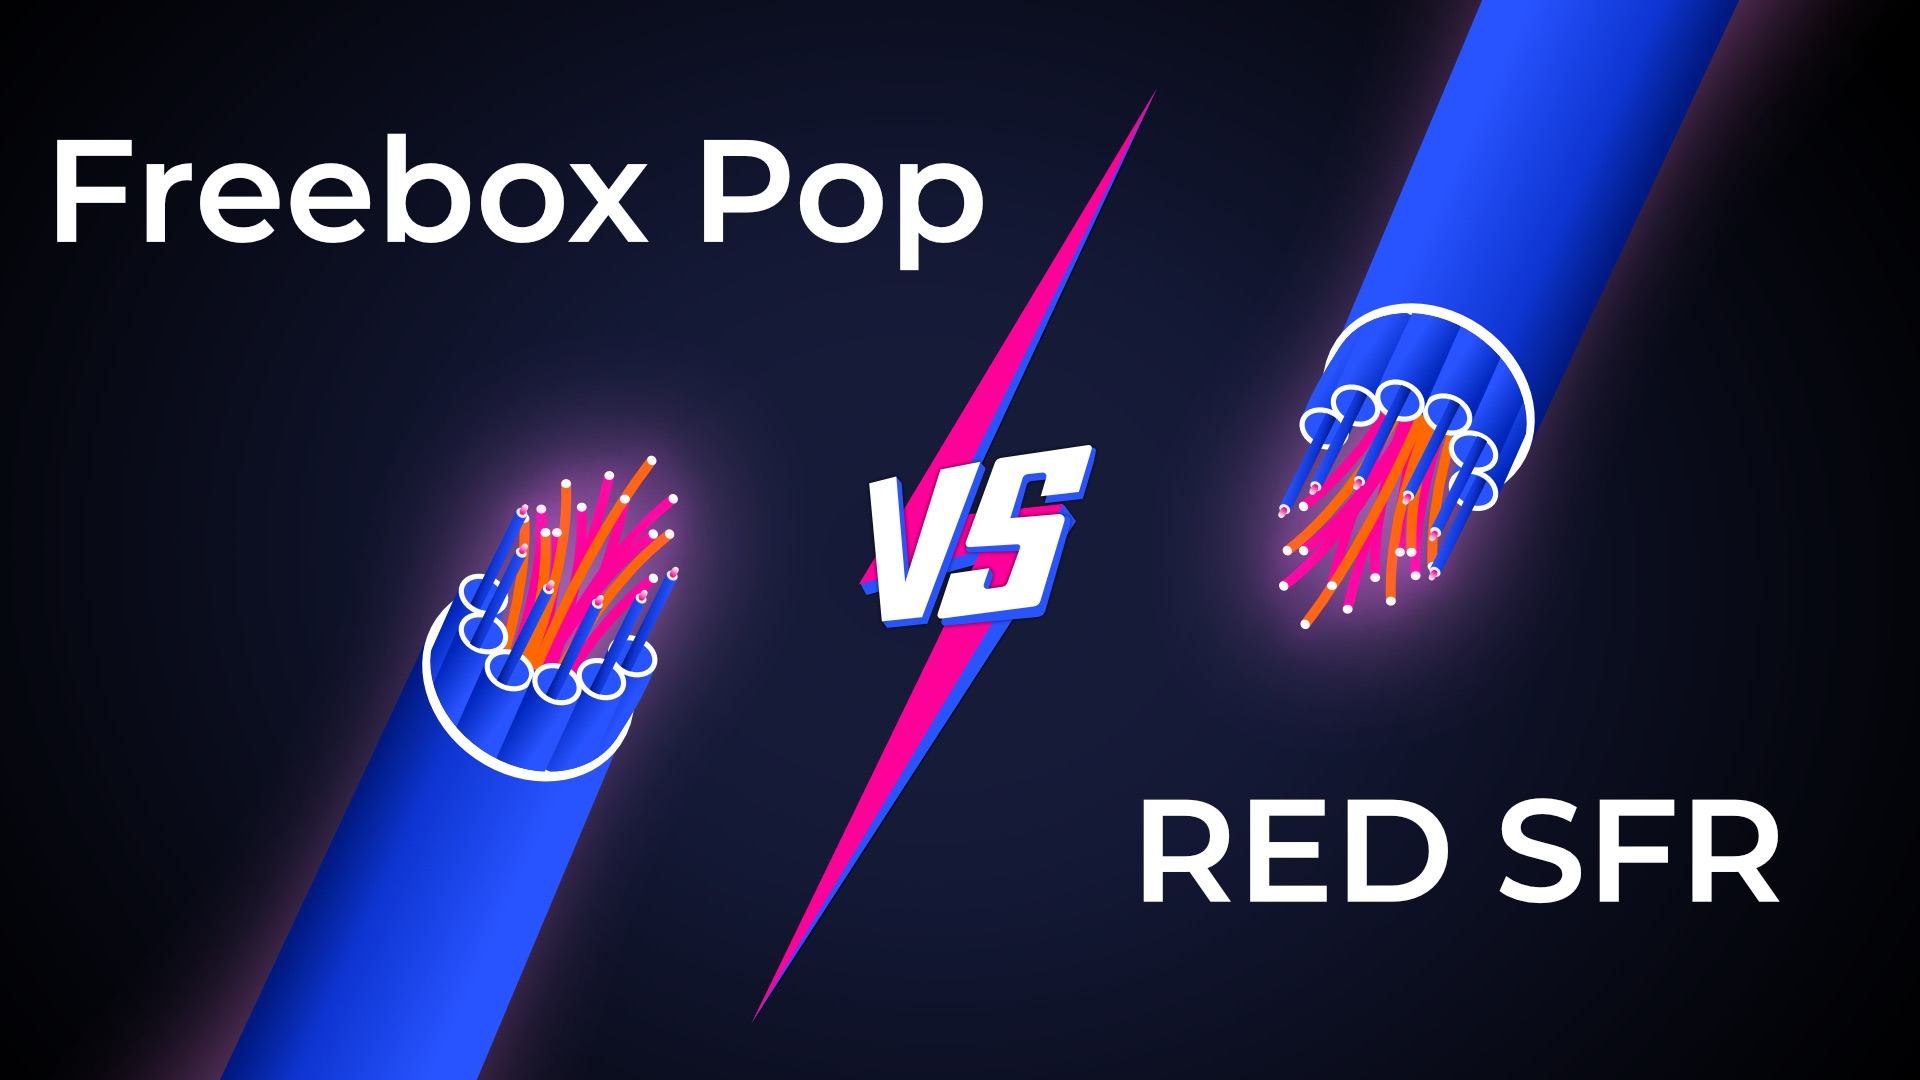 Box fibre en promo : RED Box vs Freebox mini 4K, quel est le meilleur  forfait internet ? - CNET France